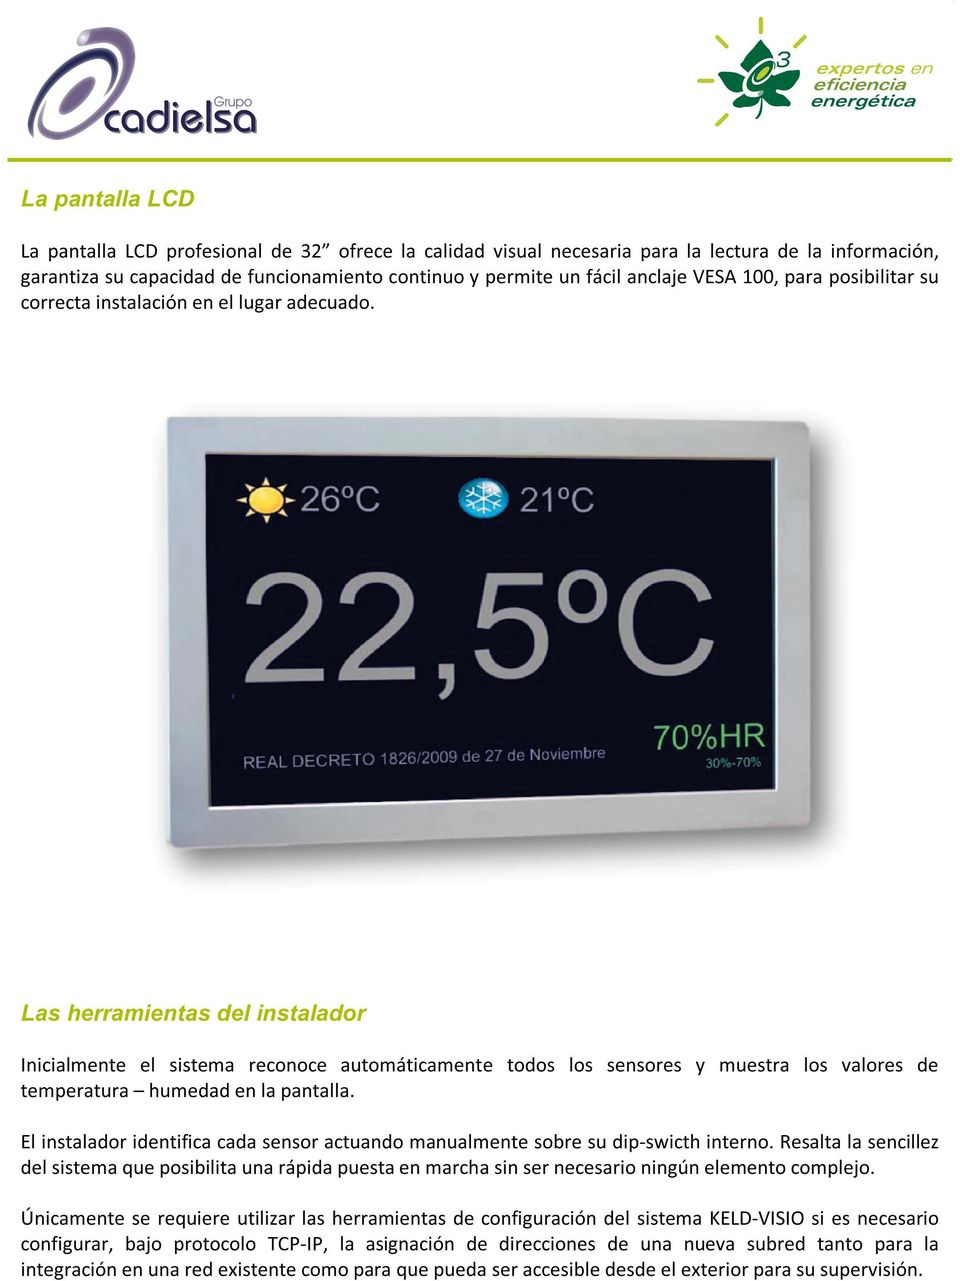 Las herramientas del instalador Inicialmente el sistema reconoce automáticamente todos los sensores y muestra los valores de temperatura humedad en la pantalla.